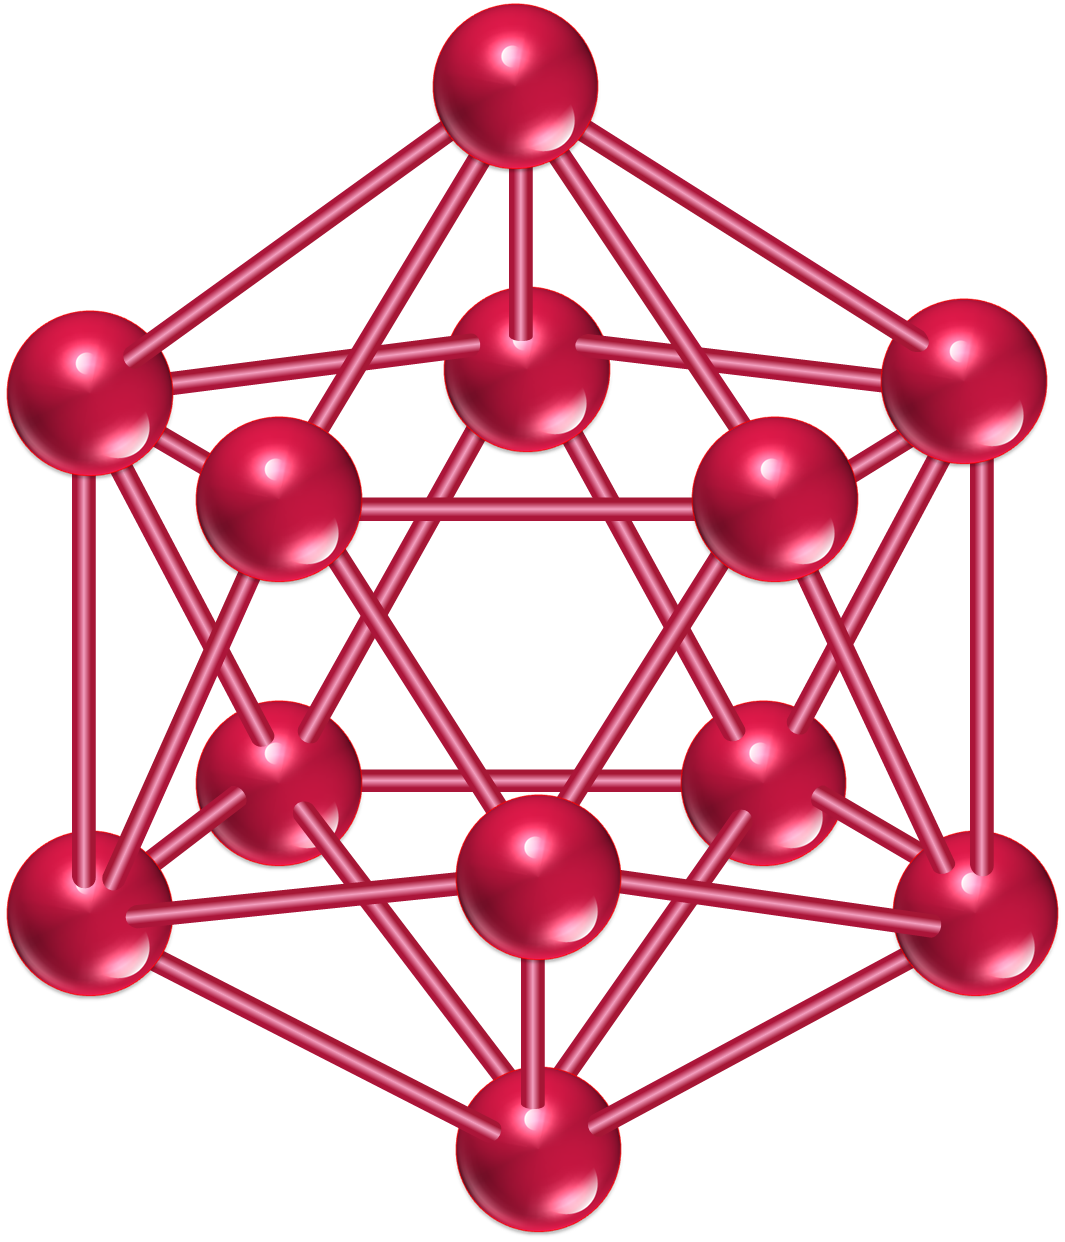 Dwudziestościenny klaster boru - ikosaedr.